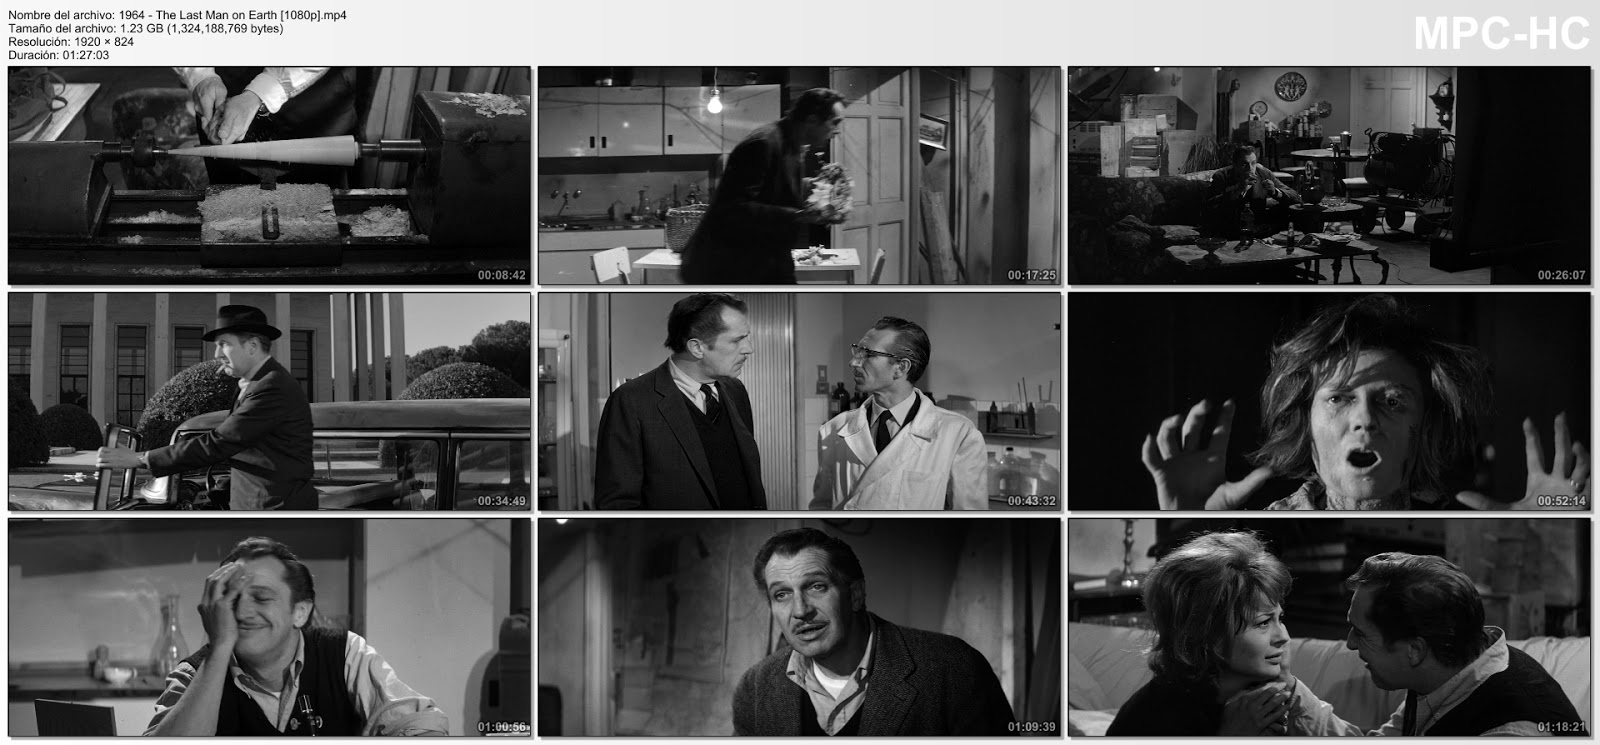 The Last Man on Earth (1964)|1080p|Subtitulado|Mega|